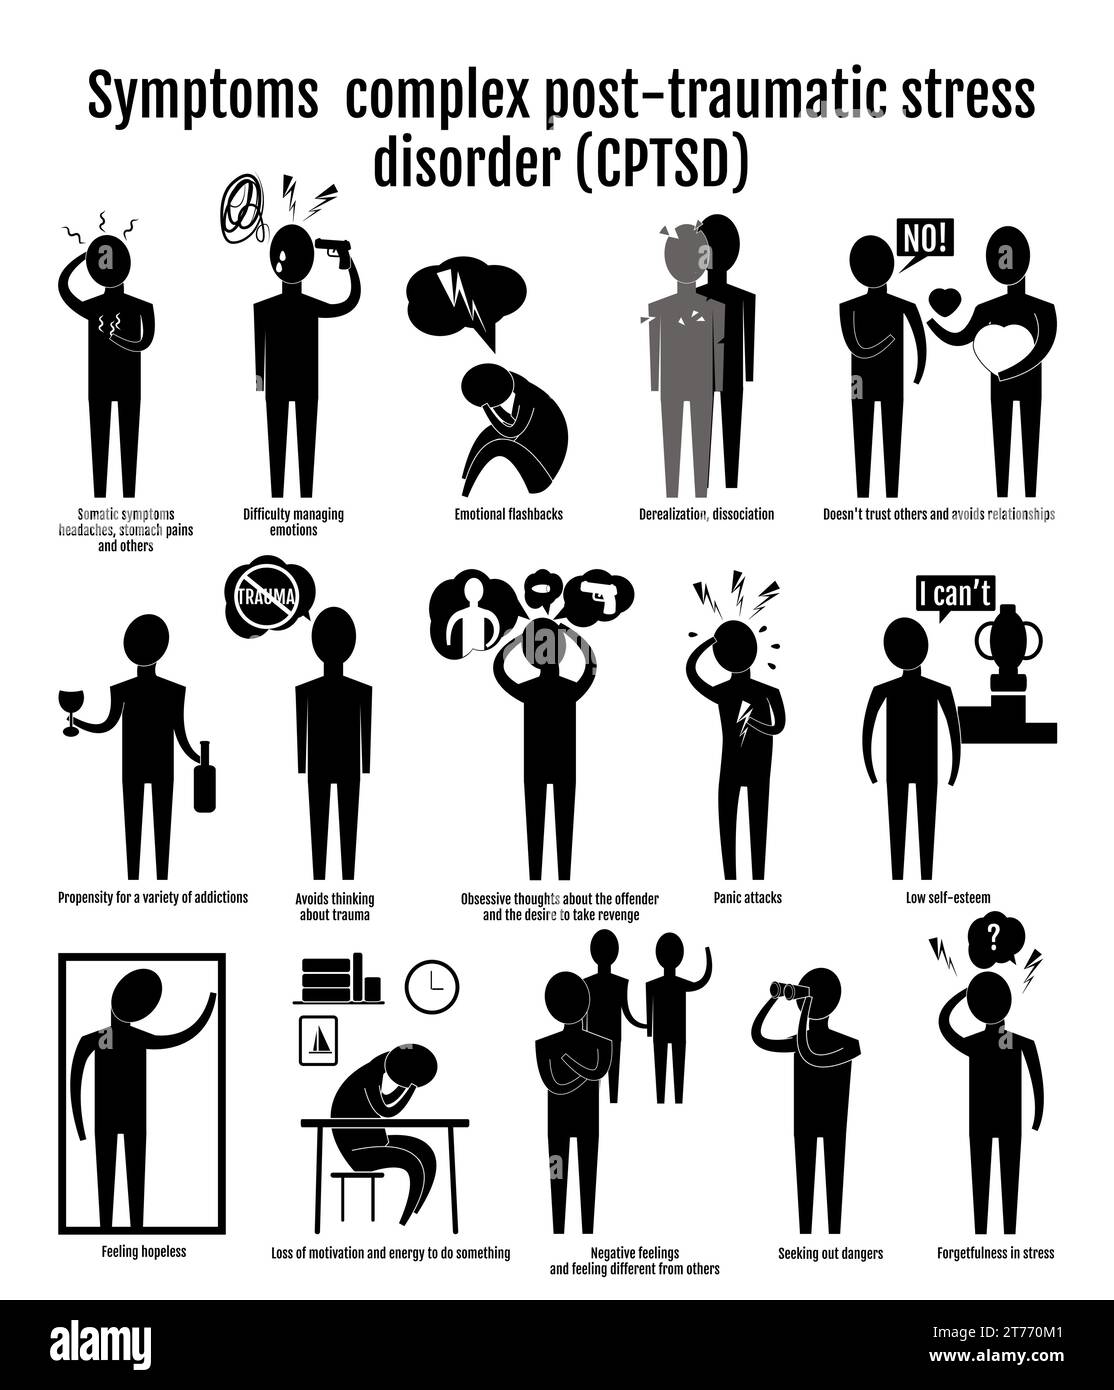 Icone infografiche sintomi PTSD complessi. Le sagome nere delle persone dimostrano le conseguenze di trauma, evasione, dipendenza. Illustrazione Vettoriale